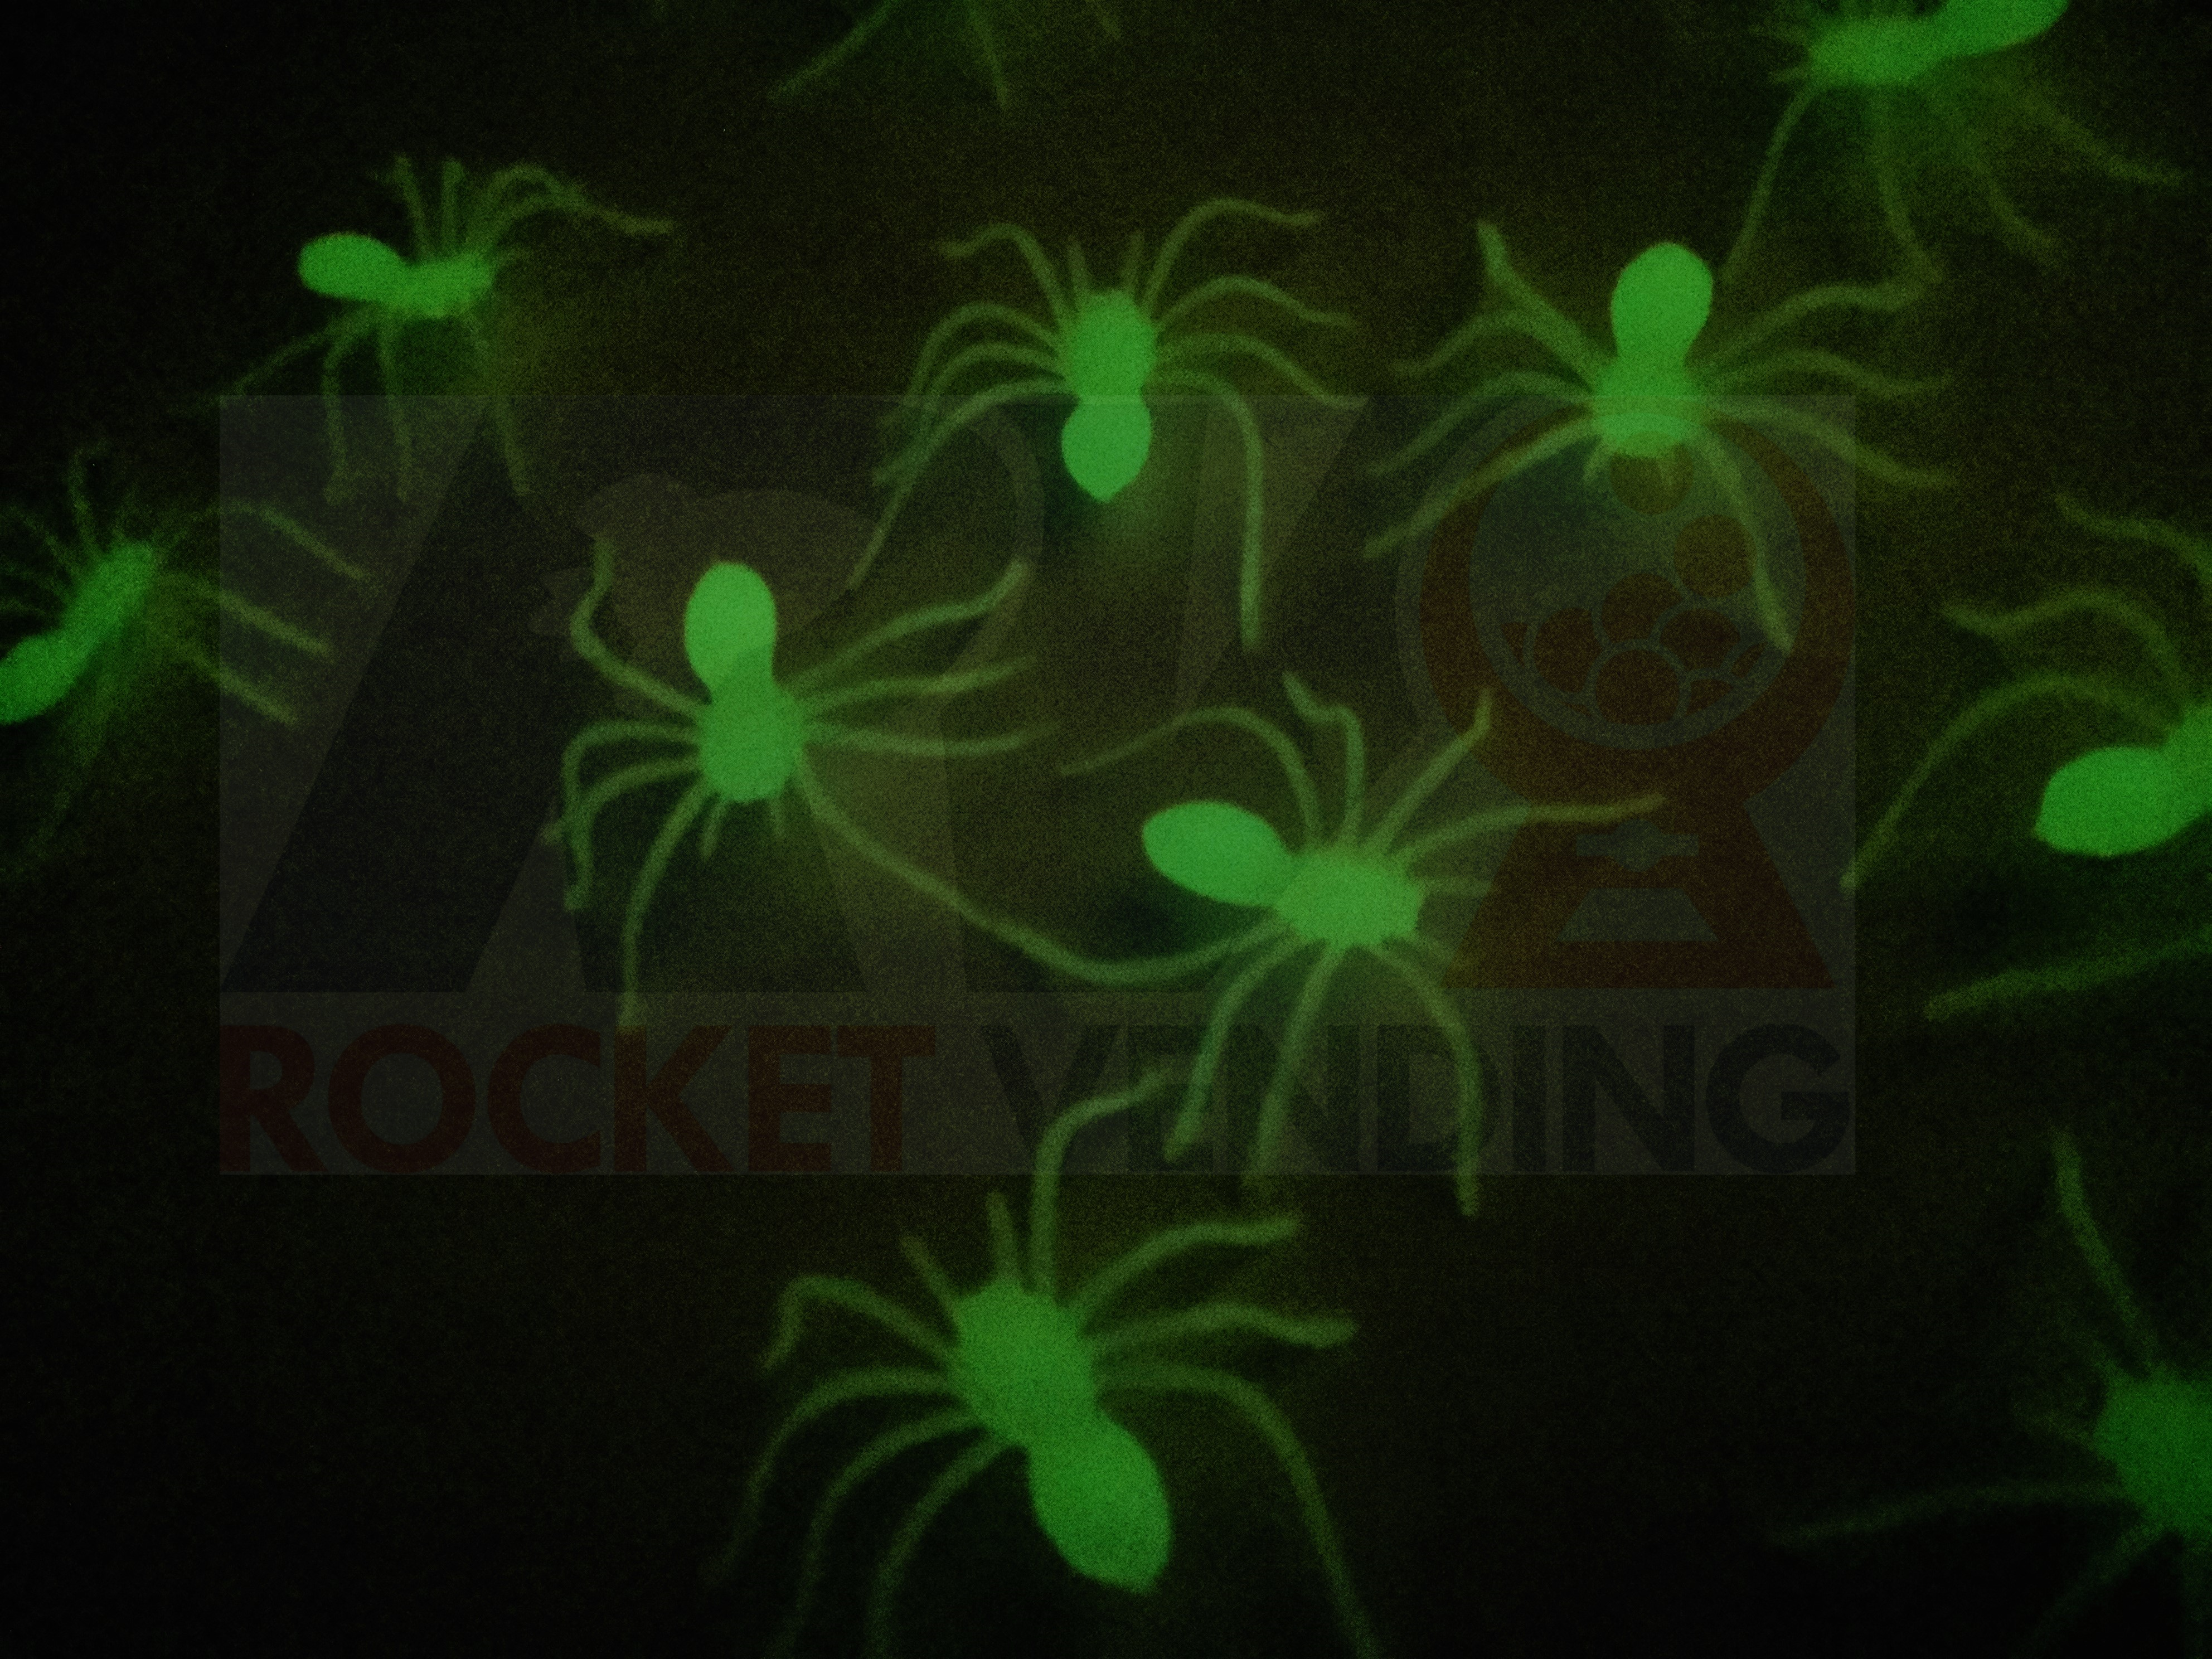 Arañitas Brillan en la oscuridad juguete Suelto 100 pzas JS - Rocket Vending Todo en Chicleras